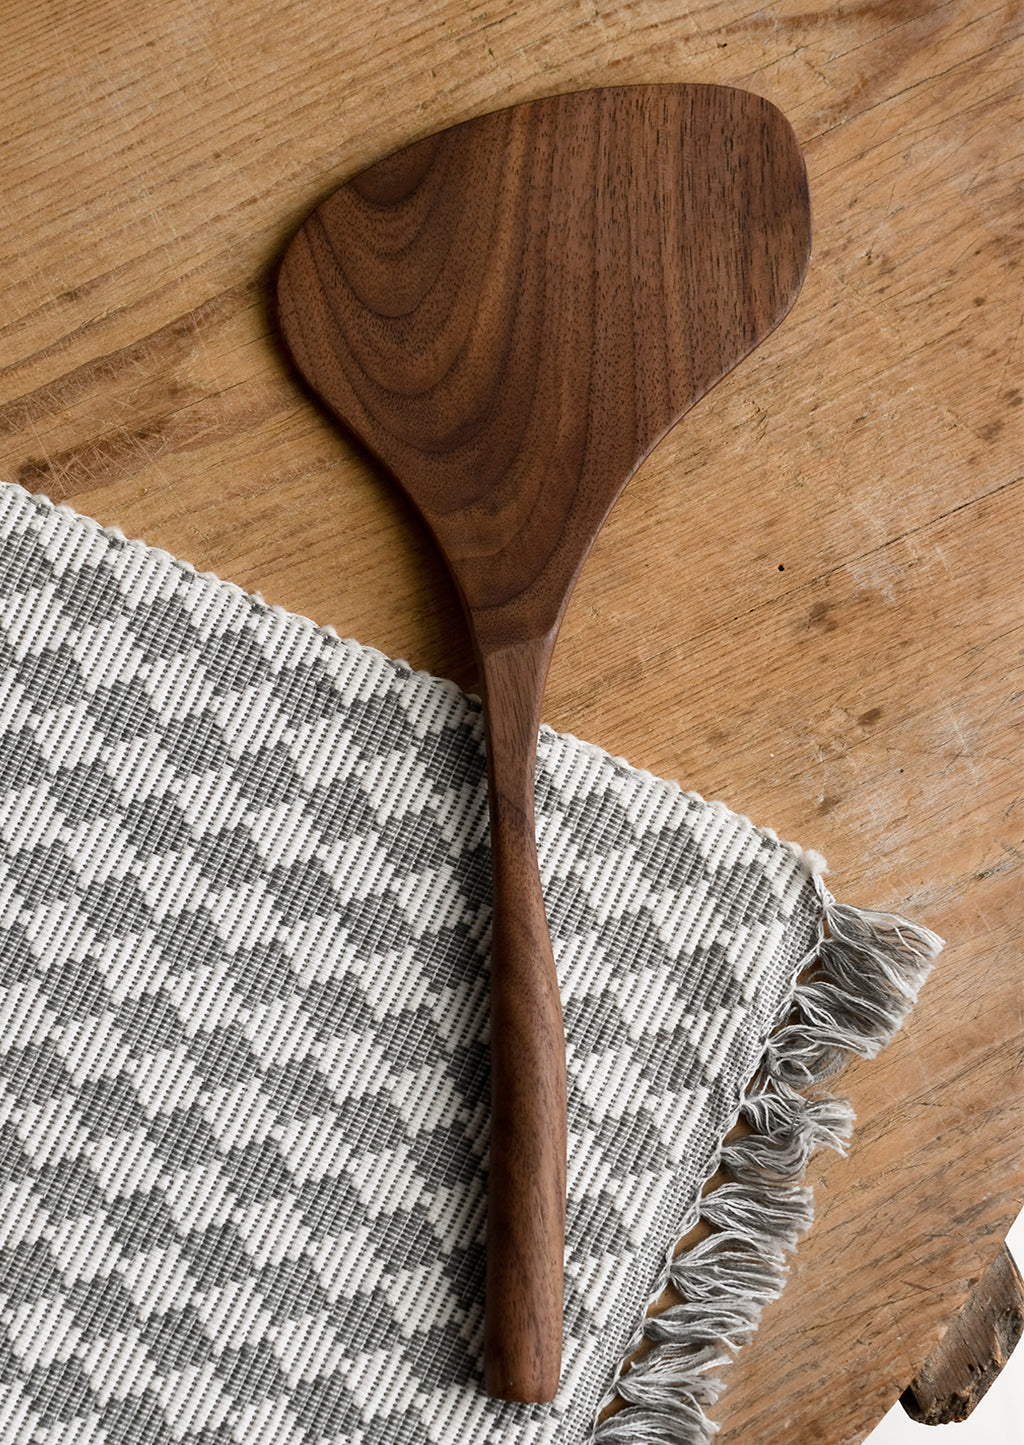 Wide: A walnut wood spatula in wide shape.